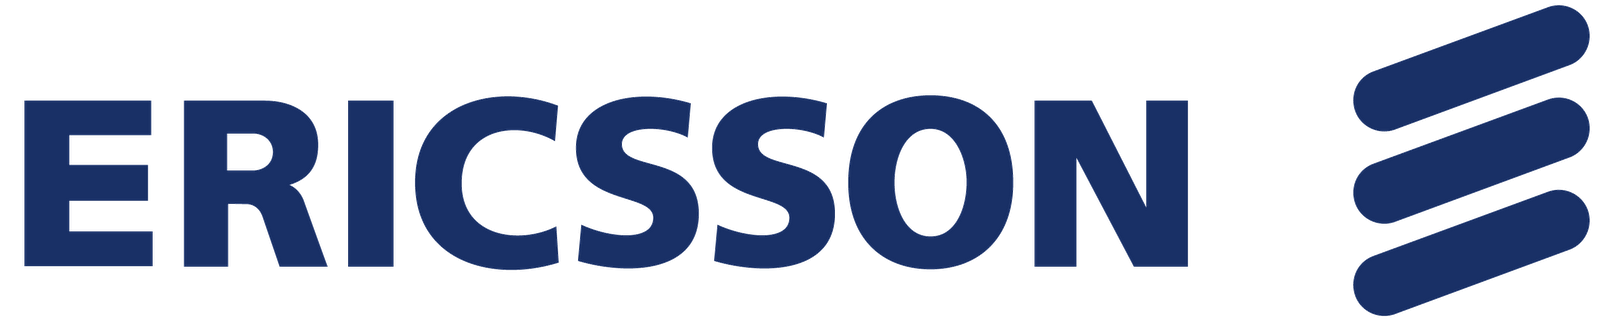 ericsson-logo.png